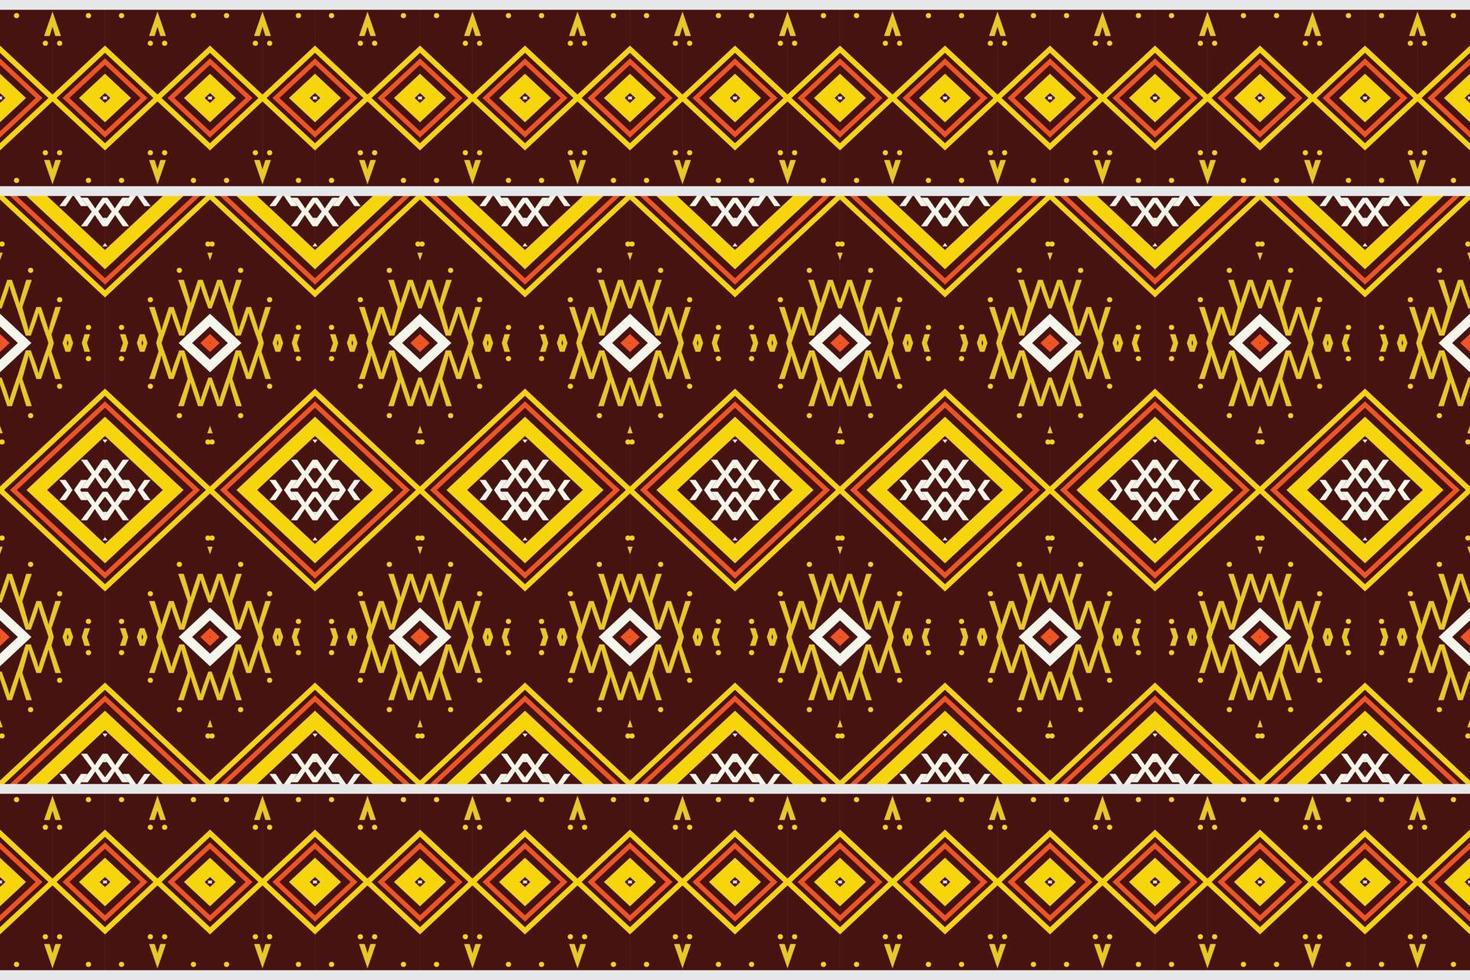 etnisk textur stam- afrikansk geometrisk traditionell etnisk orientalisk design för de bakgrund. folk broderi, indian, skandinaviska, zigenare, mexikansk, afrikansk matta, matta. vektor